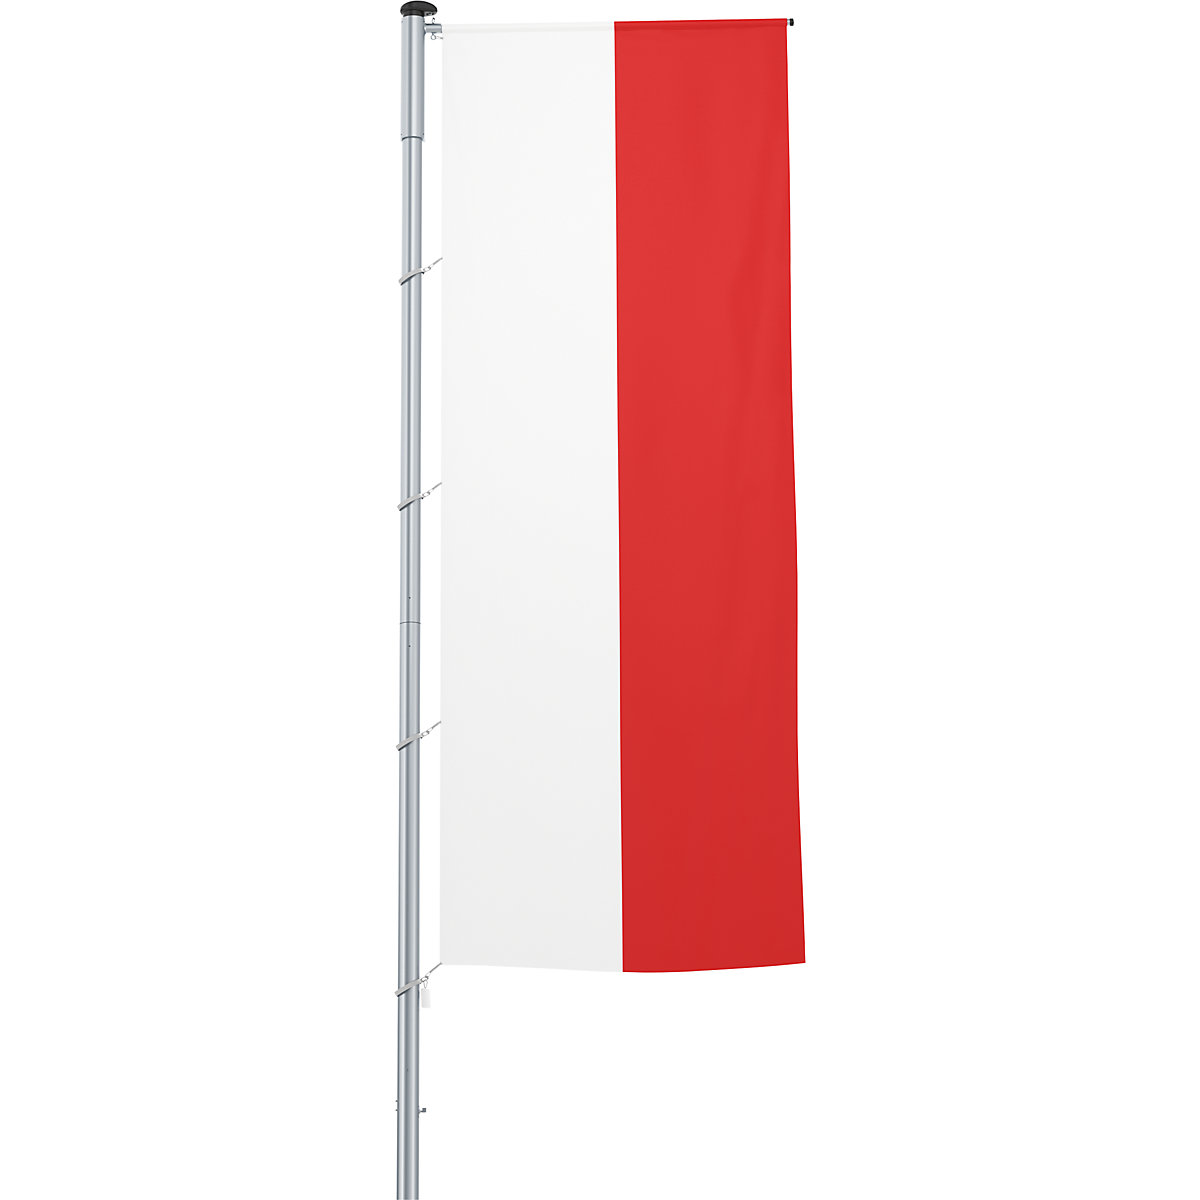 Mastvlag/landvlag – Mannus, formaat 1,2 x 3 m, Polen-3